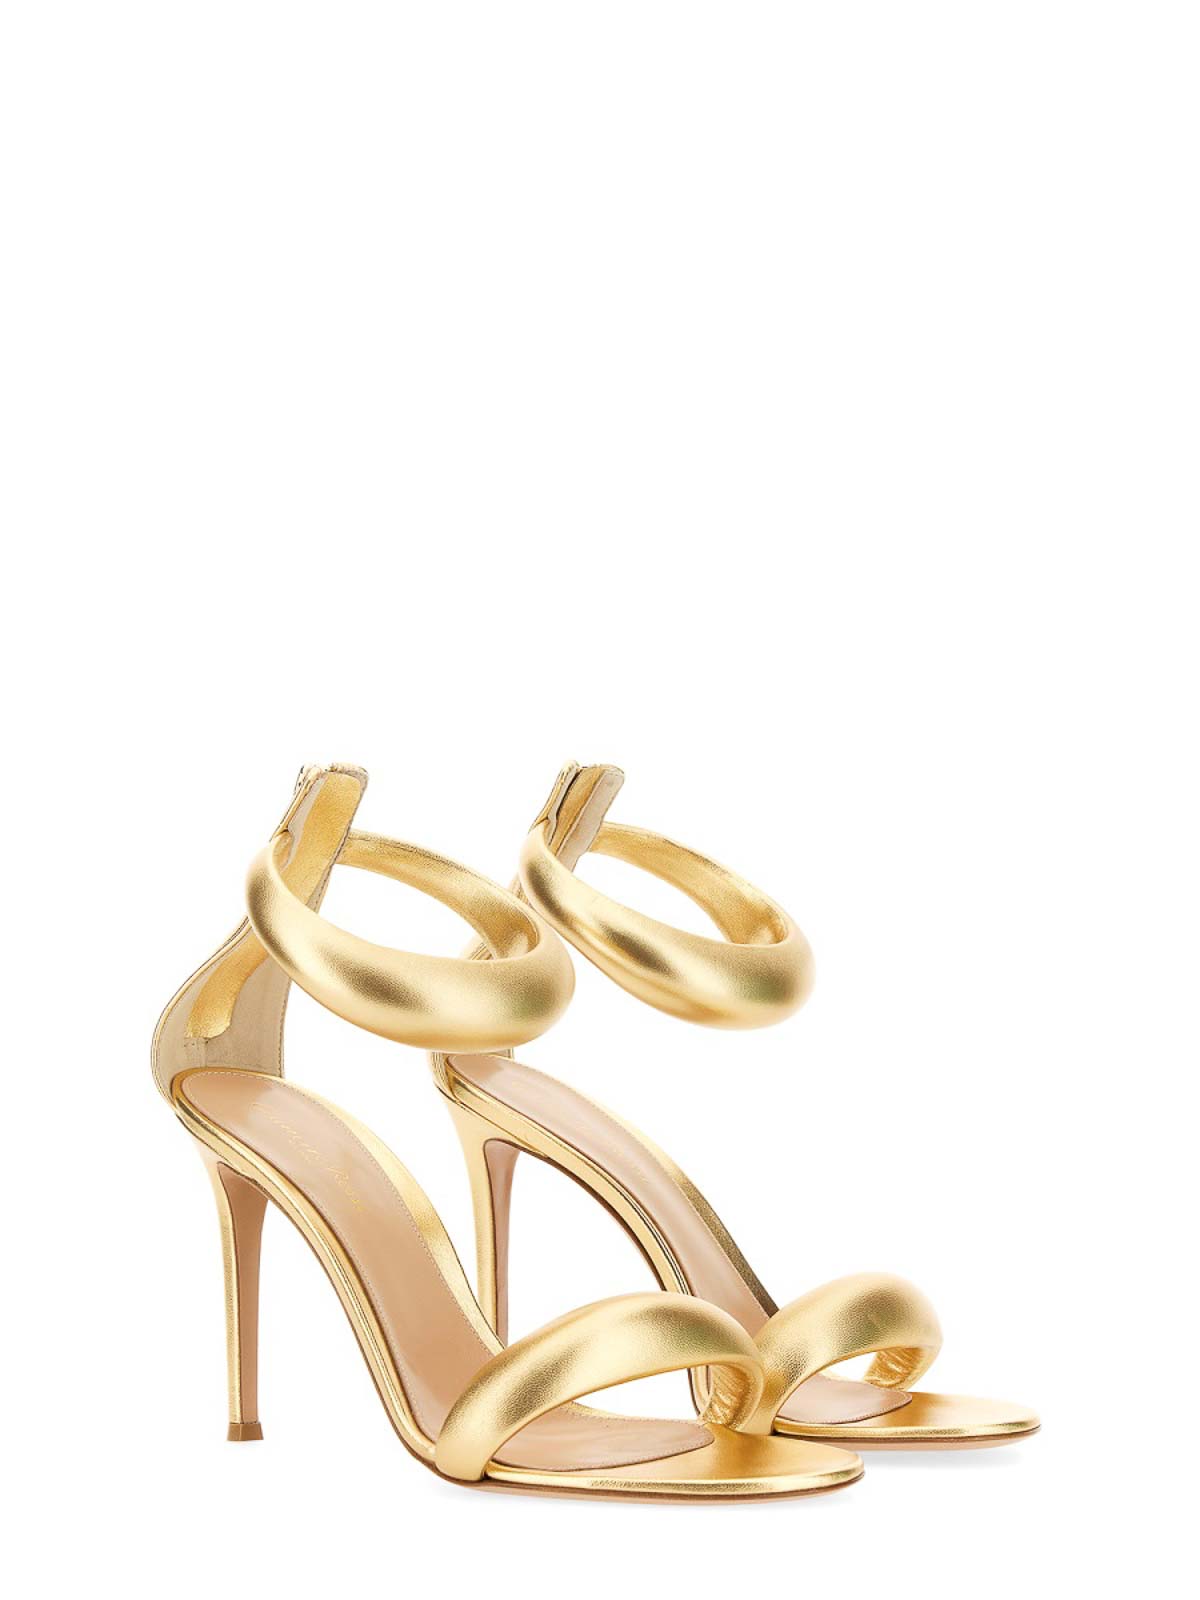 Shop Gianvito Rossi Sandalias - Sandal In Gold